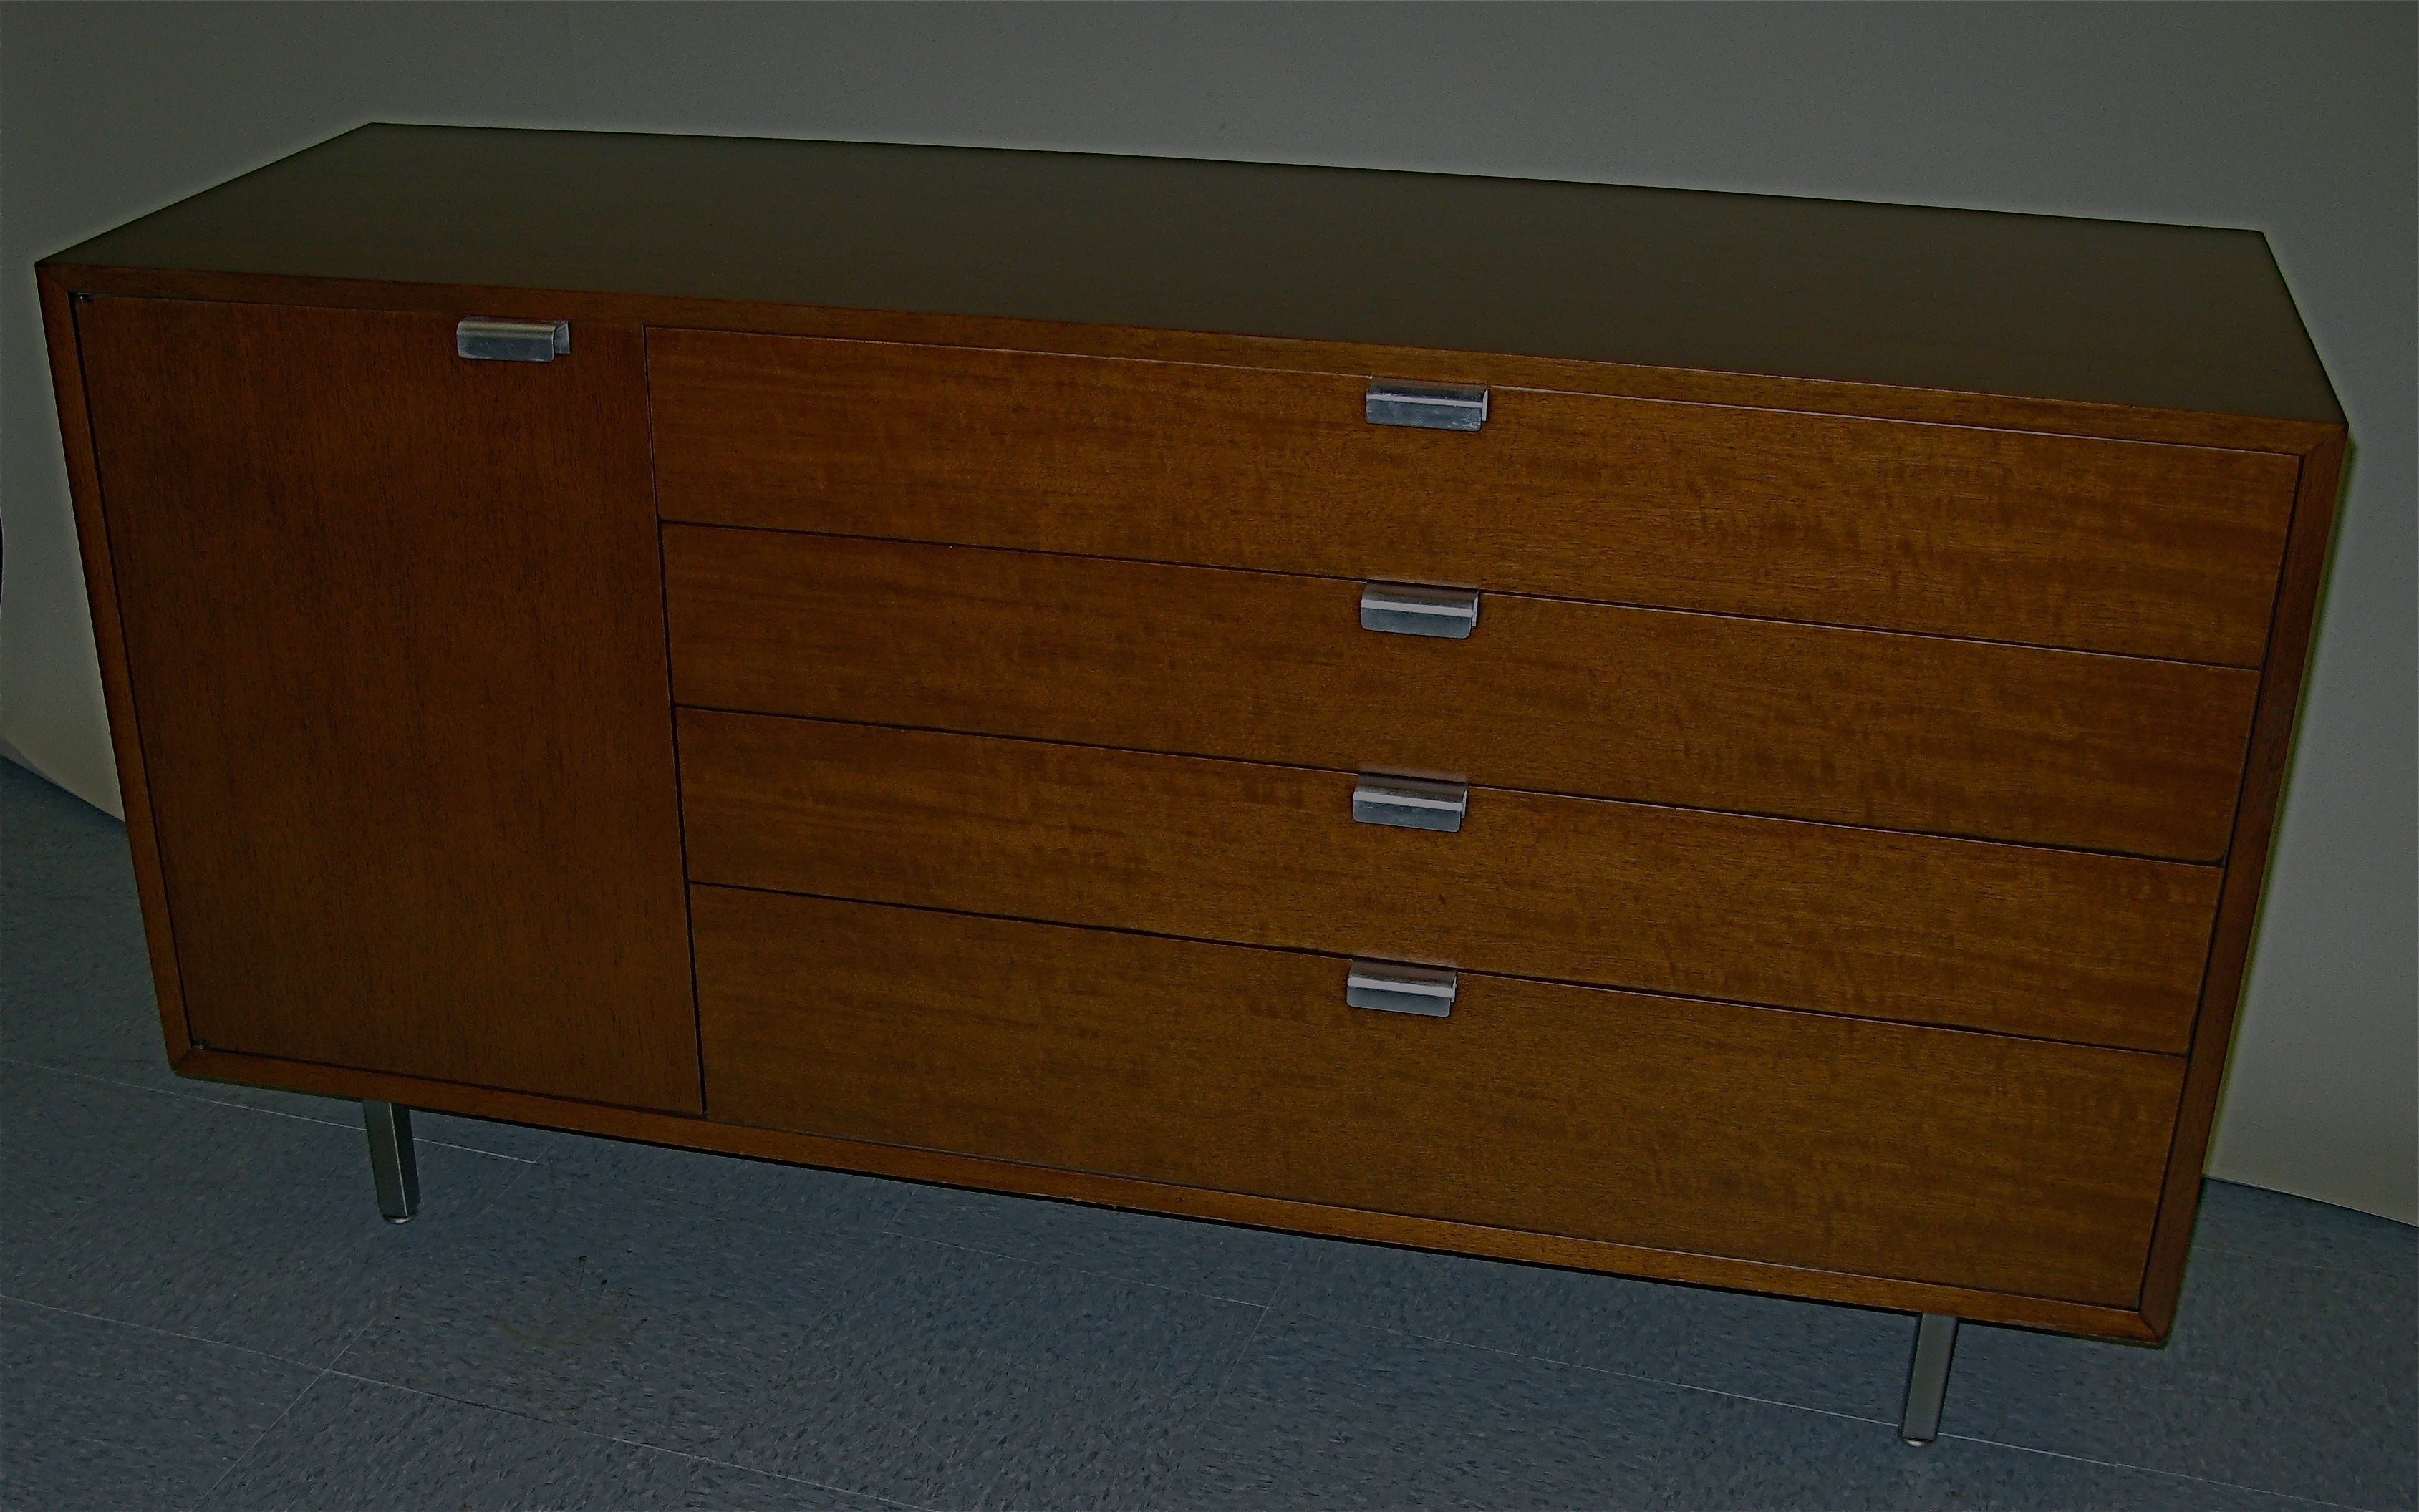 1950 George Nelson 4 Drawer - 1 Door Dresser